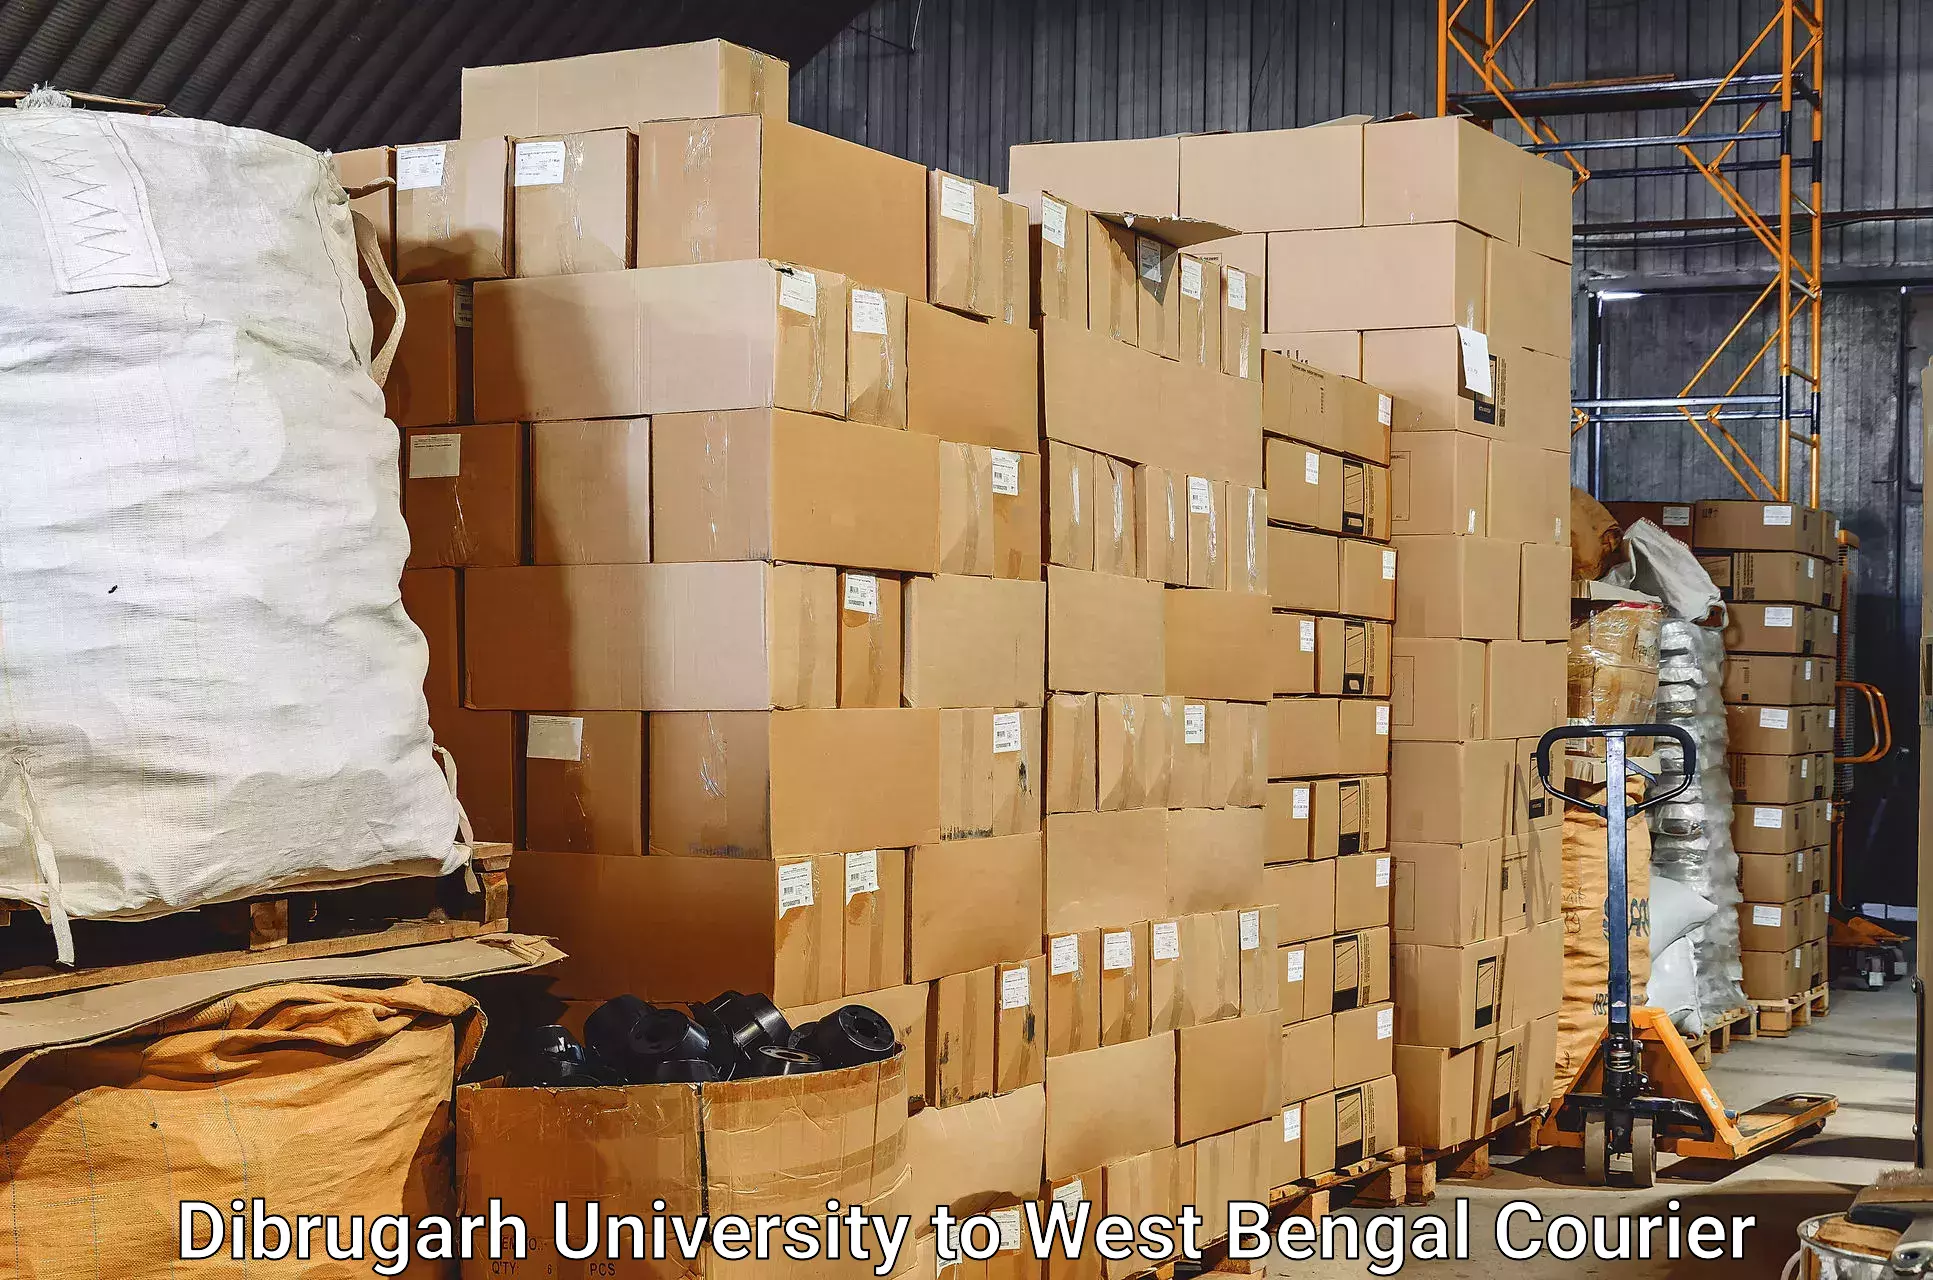 Baggage shipping experience in Dibrugarh University to Kalyani University